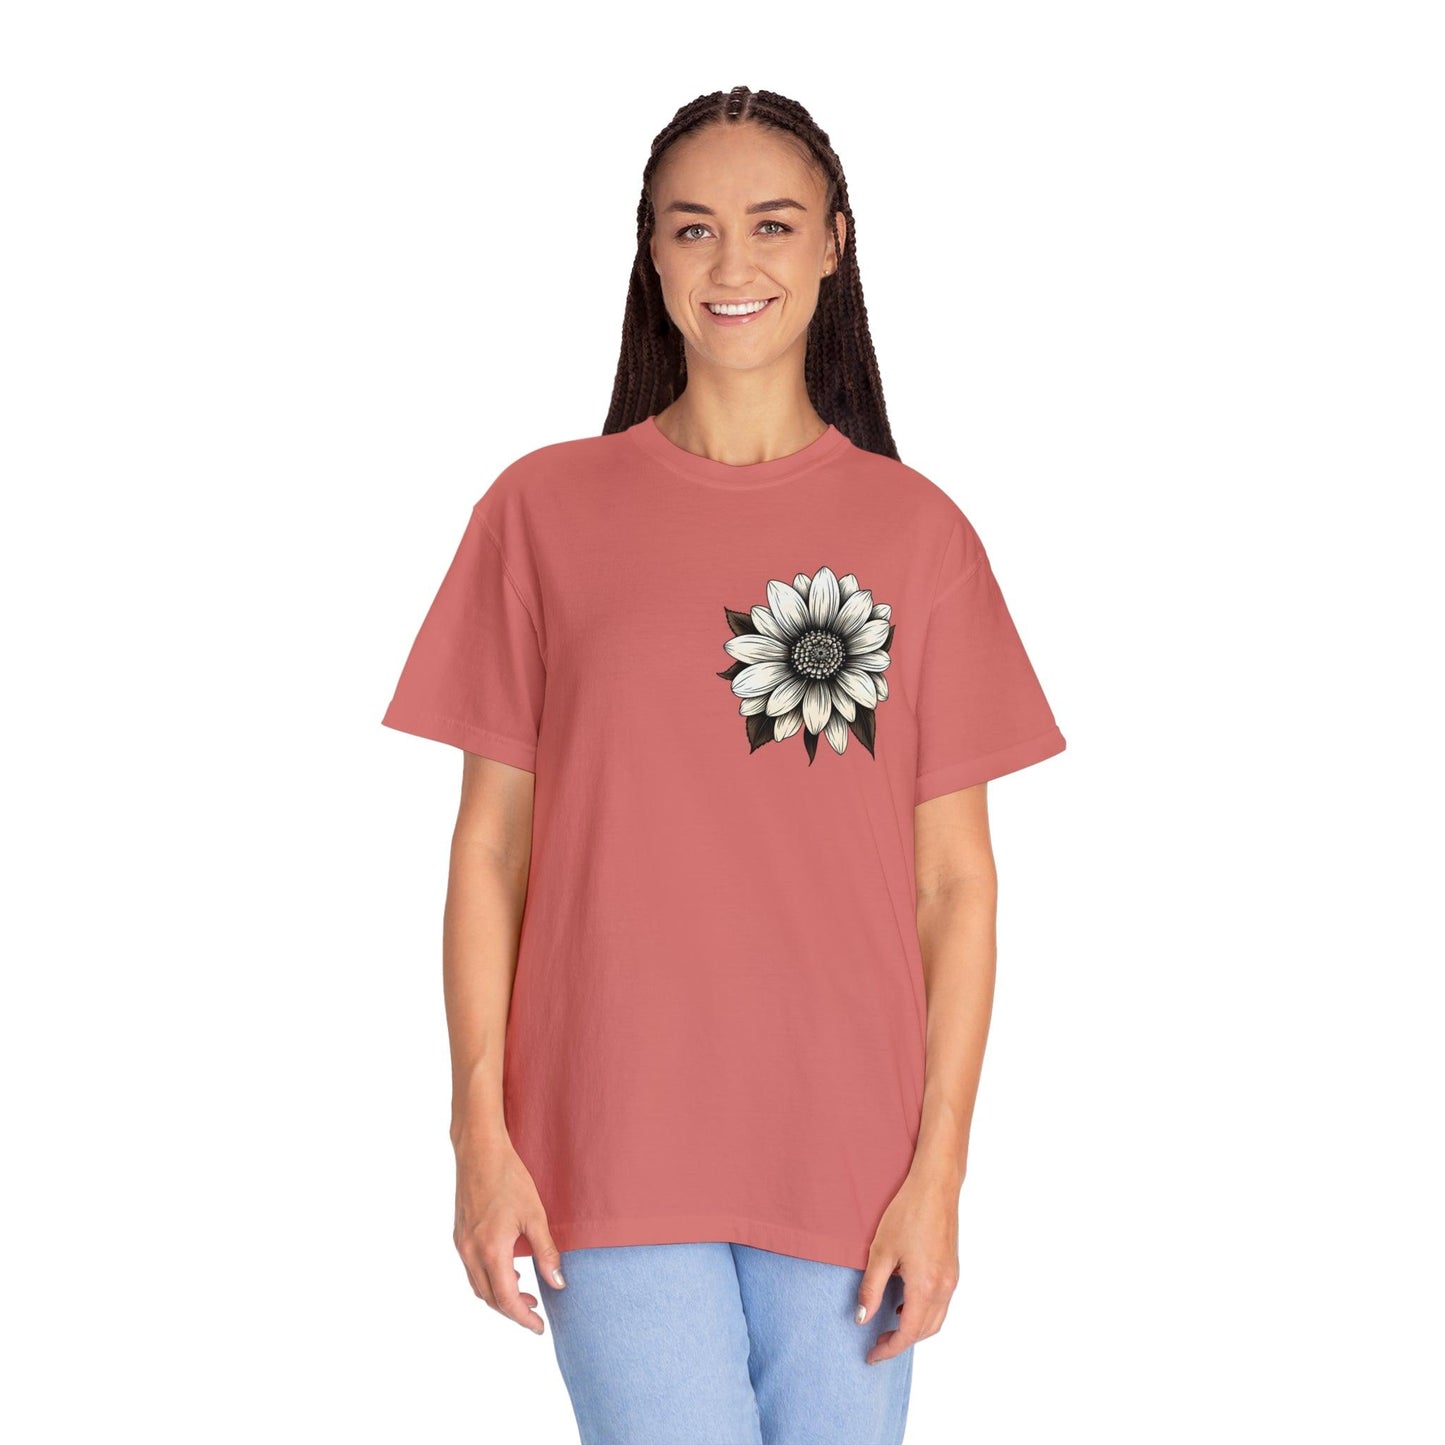 Sunflower Shirt Women Flower Shirt Aesthetic  Women Top Floral Graphic Tee Floral Shirt Flower T-shirt, Wild Flower Shirt Gift For Her